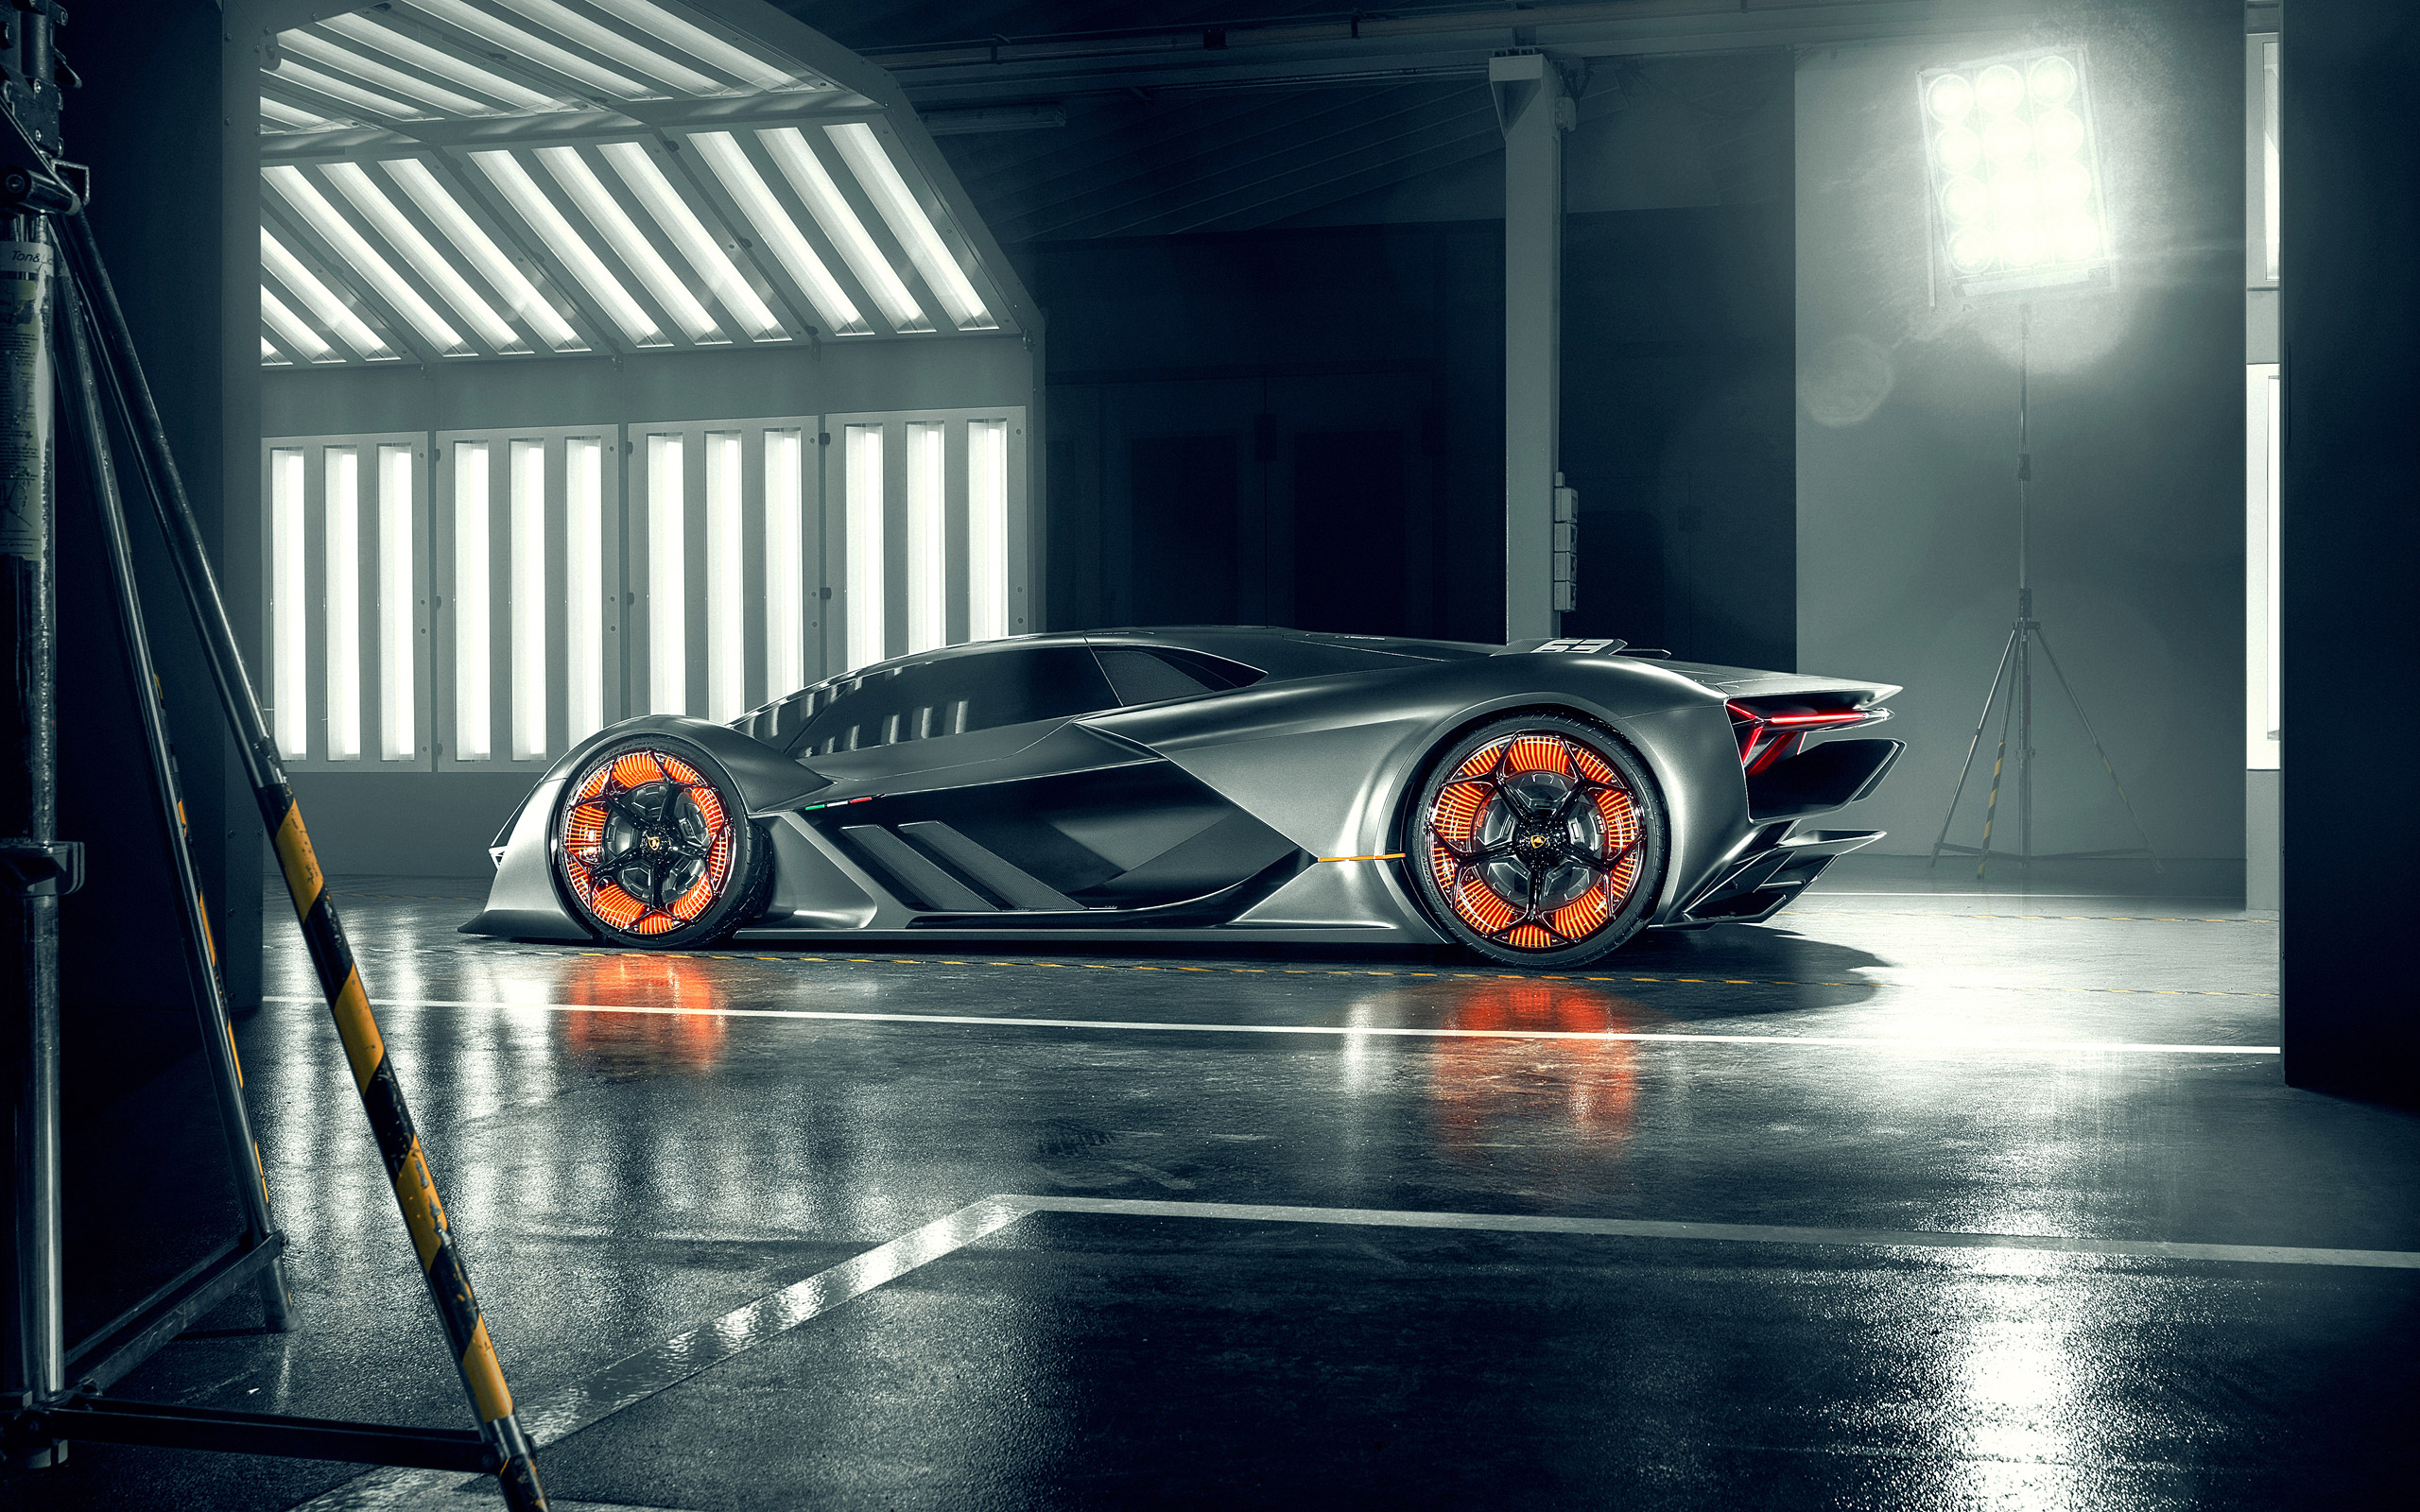  2017 Lamborghini Terzo Millennio Concept Wallpaper.